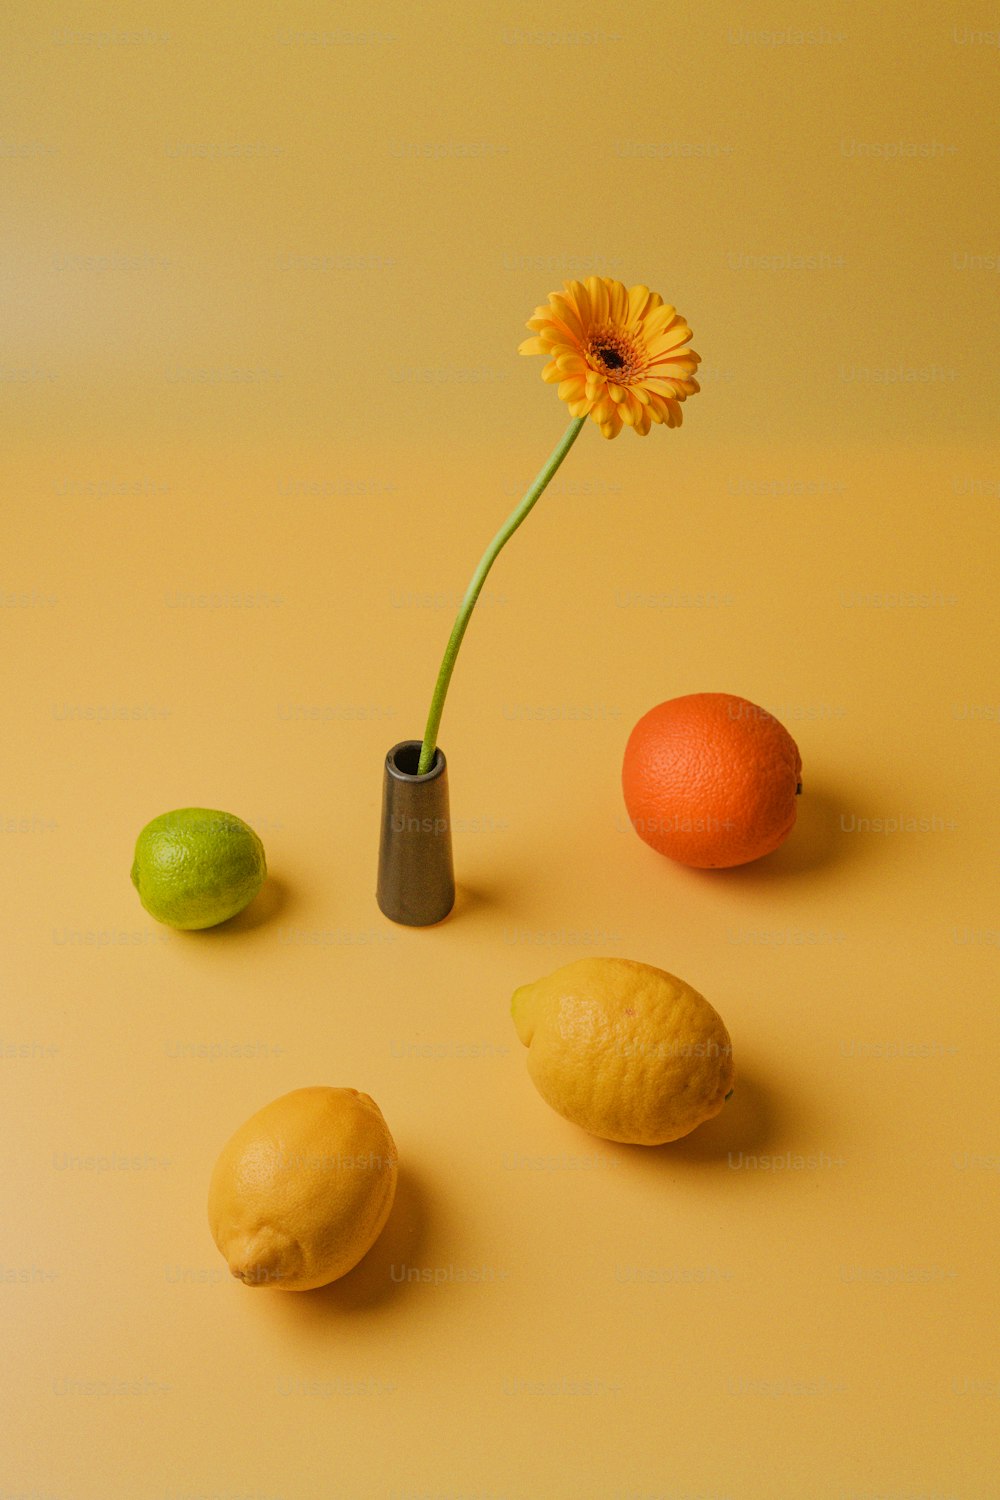 un fiore in un vaso accanto a limoni e un'arancia